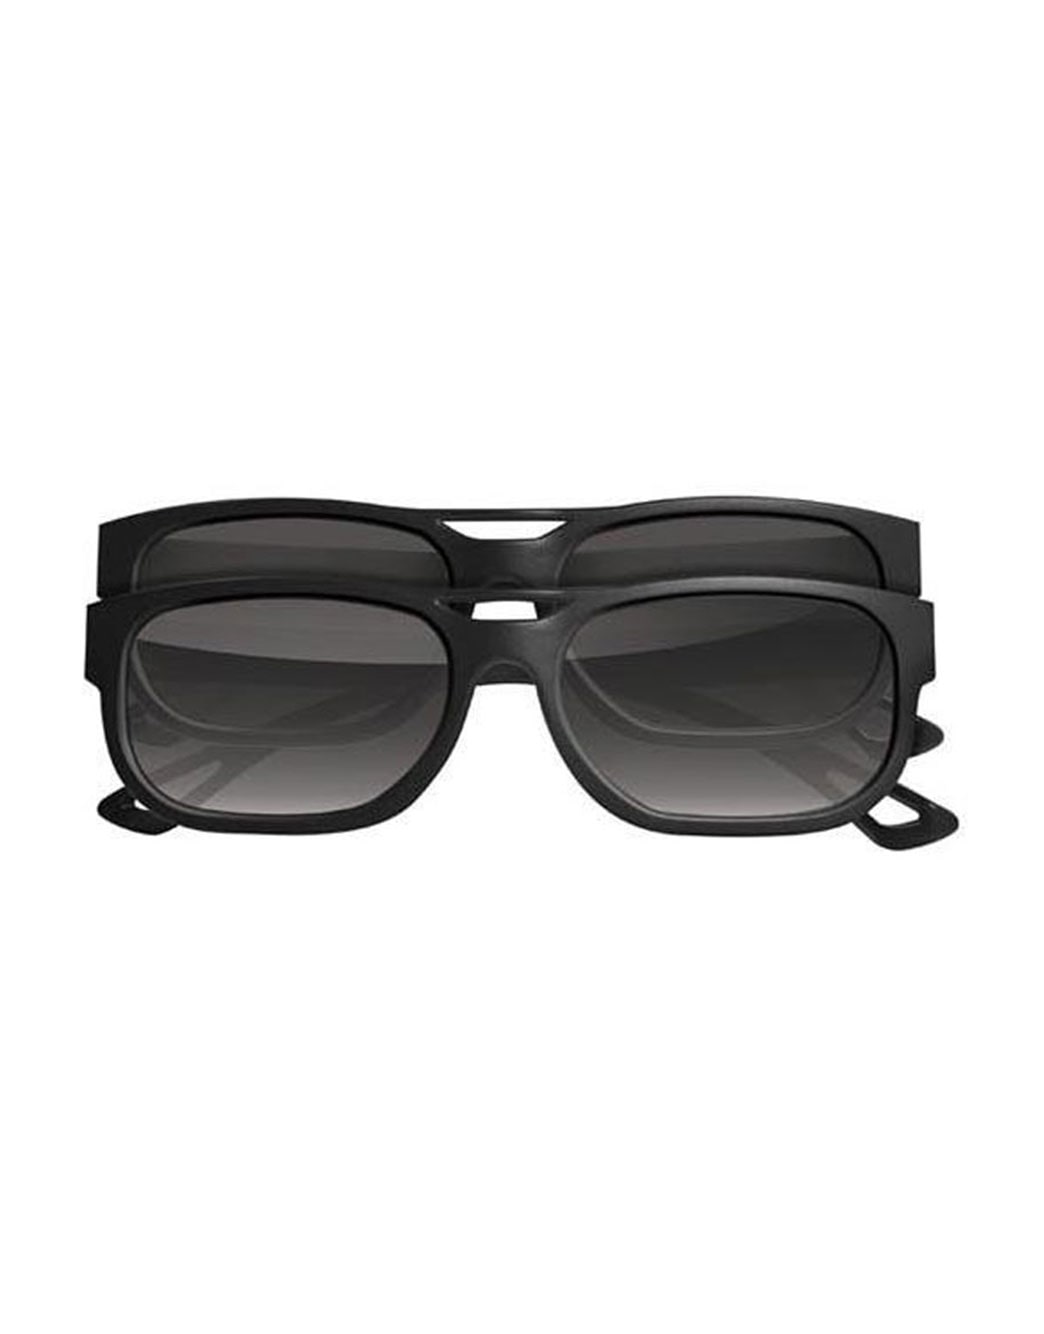 LG AG-F210: LG Cinema 3D Glasses | LG USA